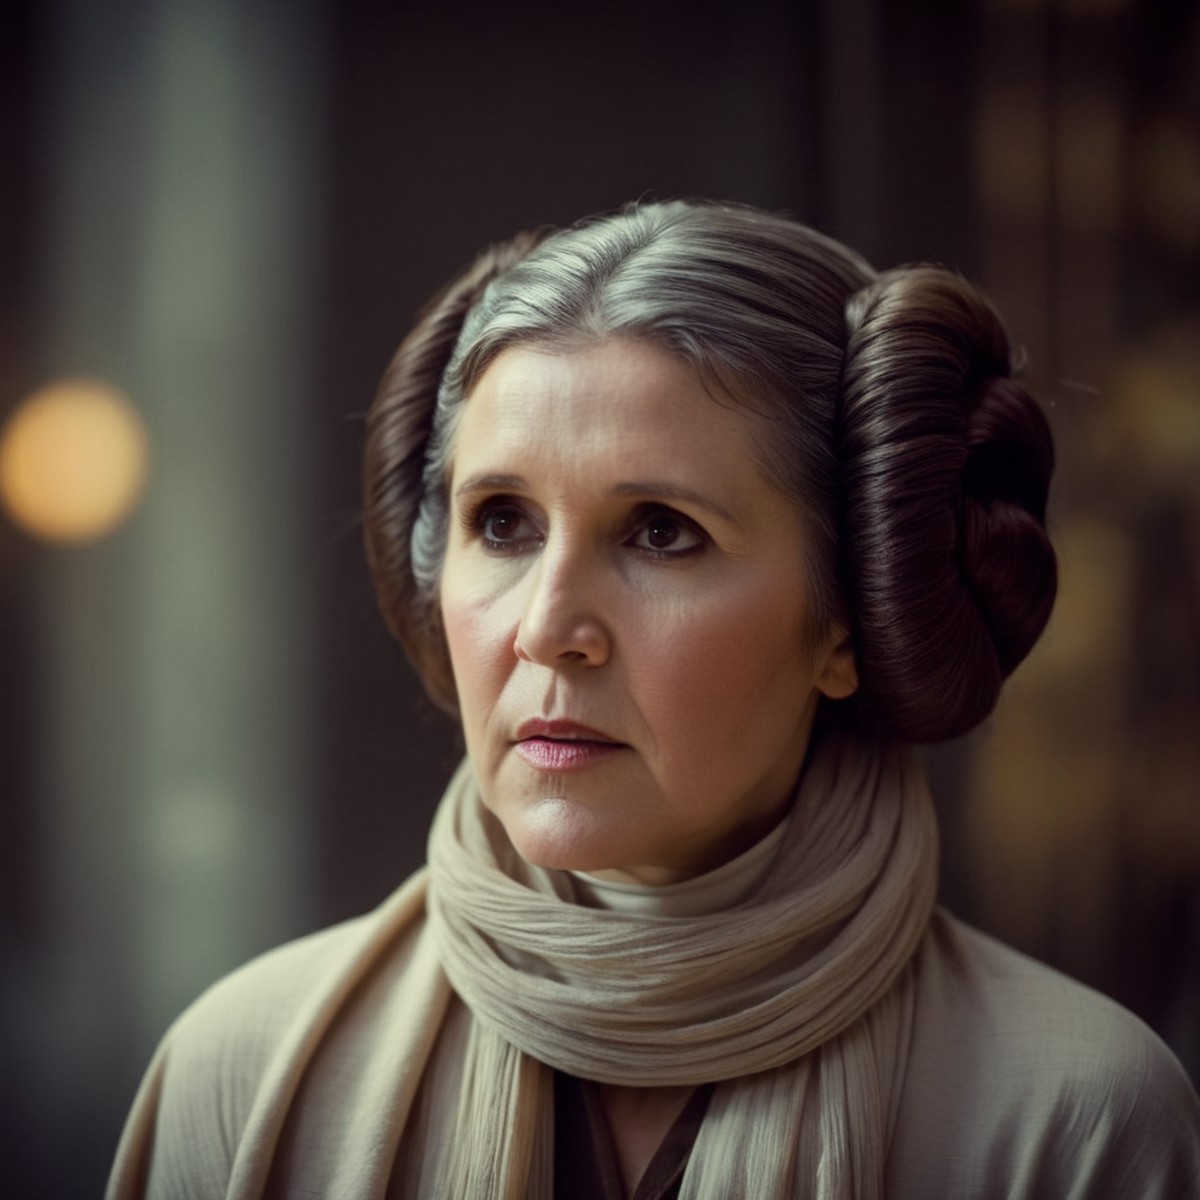 cinematic film still of  <lora:Leia Organa:1.2>
Leia Organa a grey hair milf woman with a scarf on her head in star wars u...